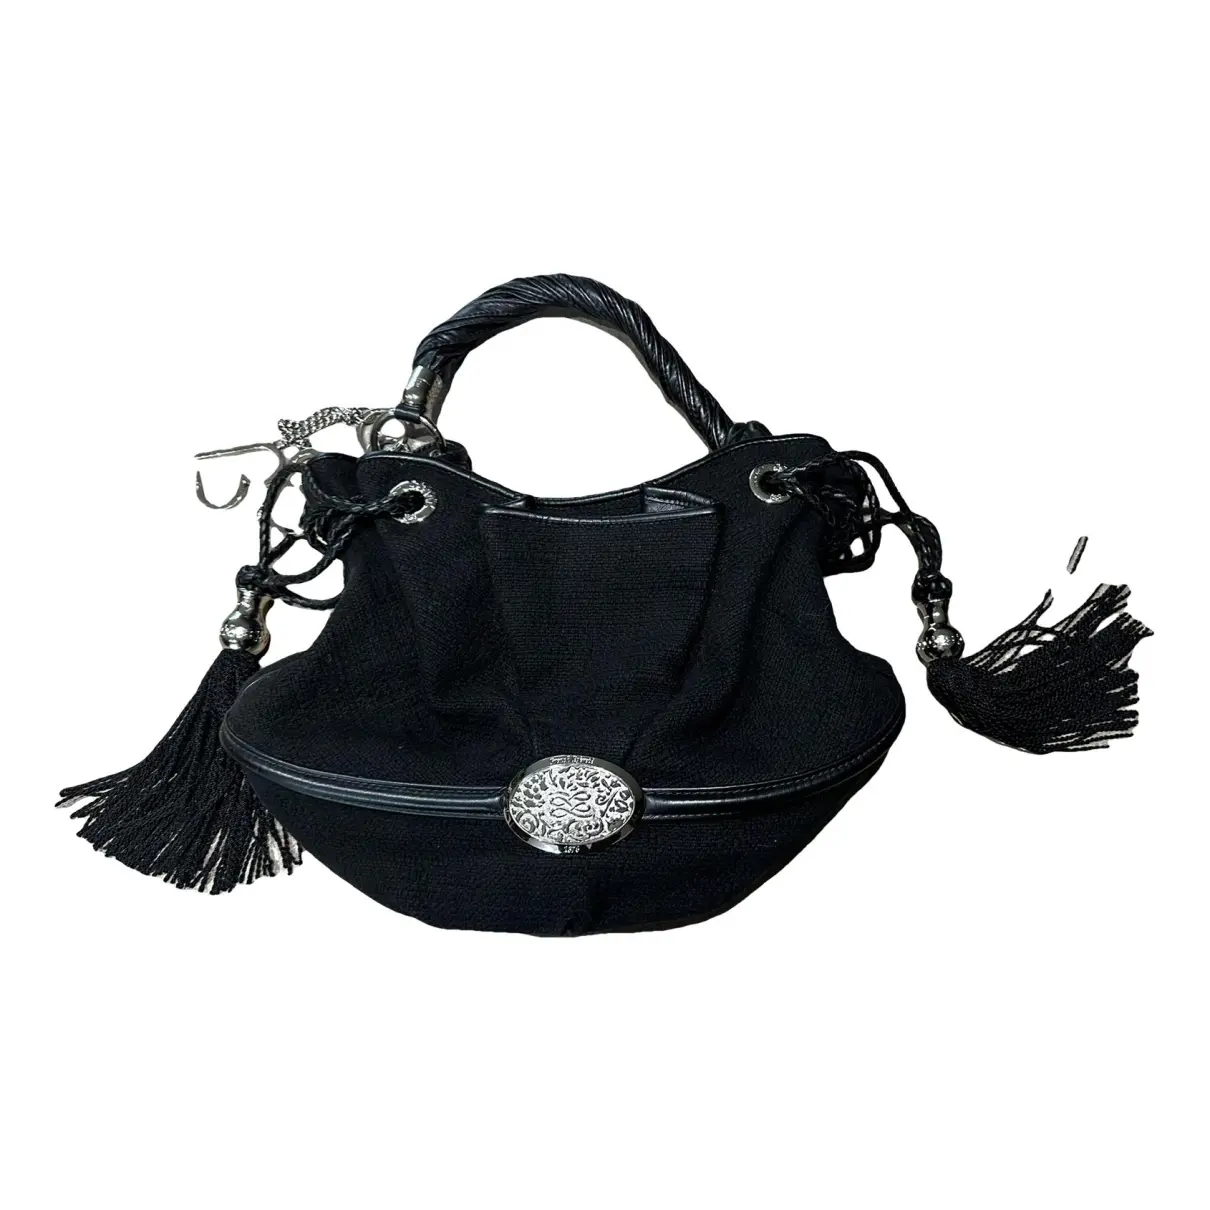 Brigitte Bardot handbag Lancel